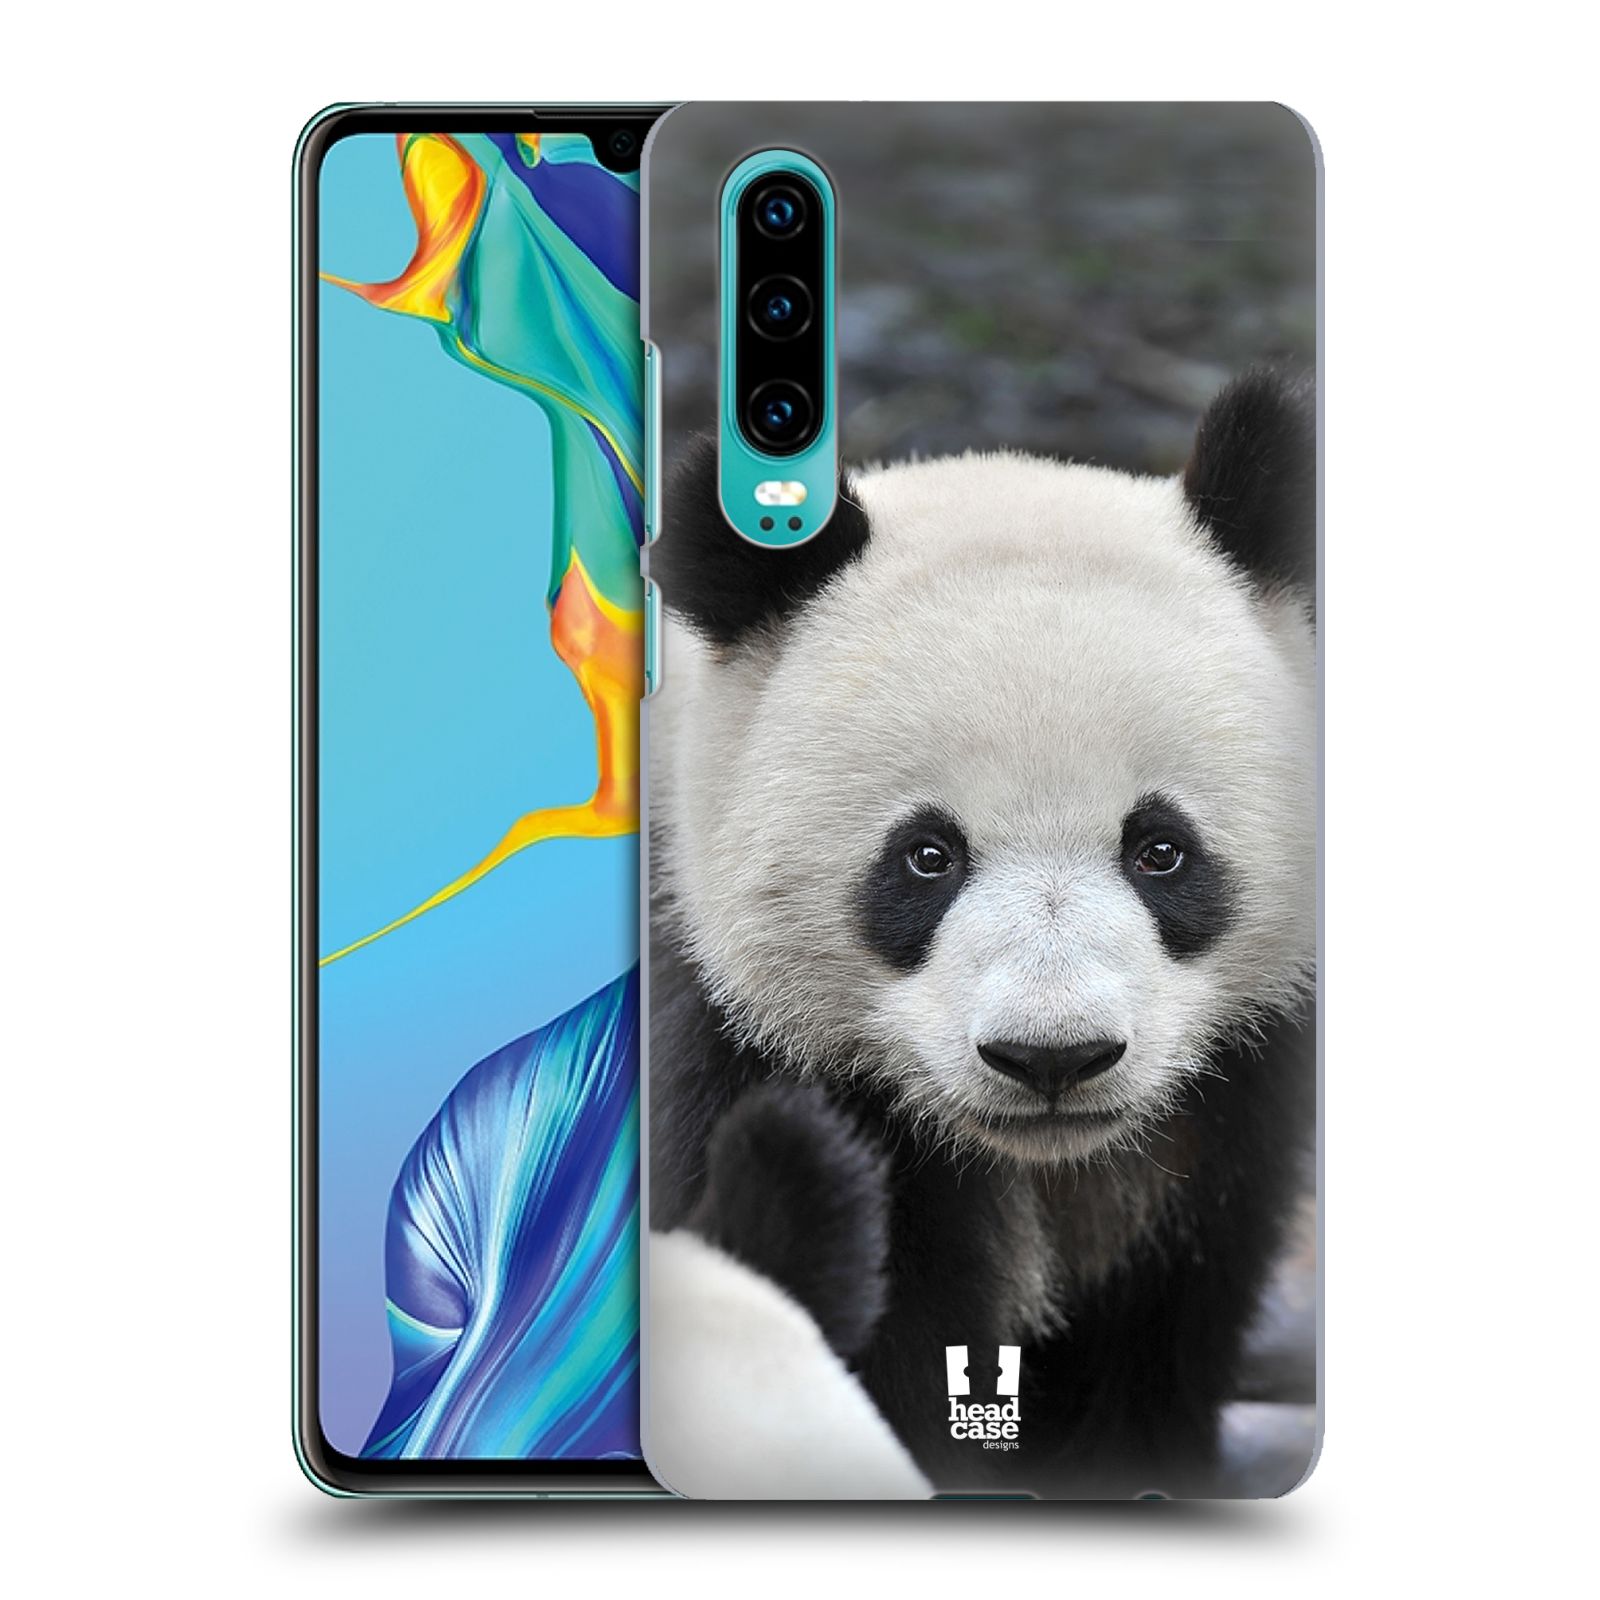 Zadní obal pro mobil Huawei P30 - HEAD CASE - Svět zvířat medvěd panda